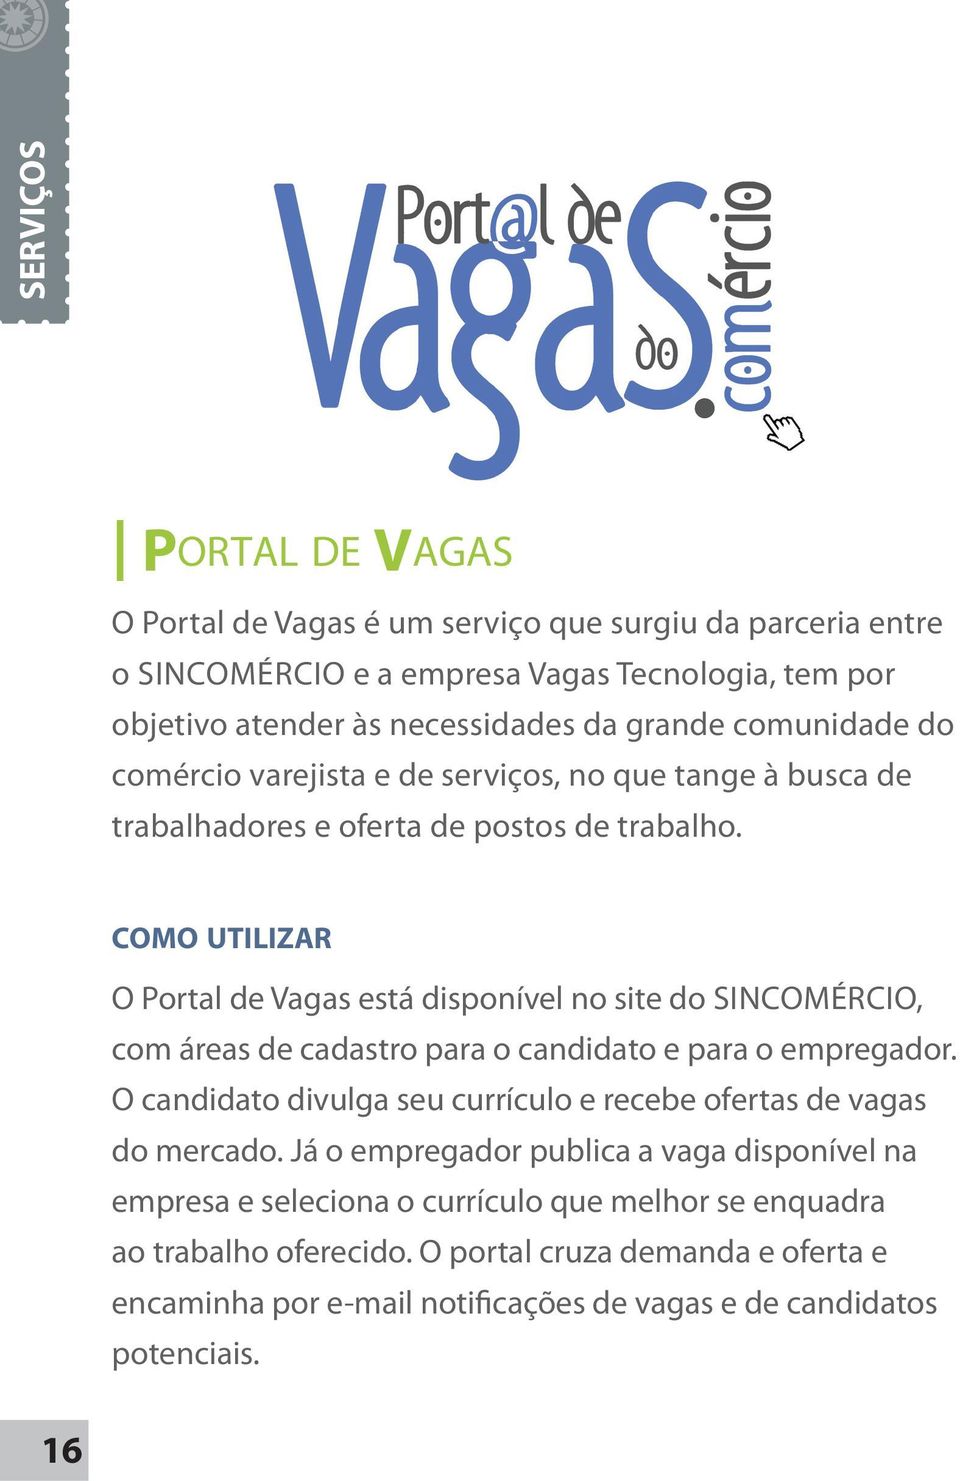 COMO UTILIZAR O Portal de Vagas está disponível no site do SINCOMÉRCIO, com áreas de cadastro para o candidato e para o empregador.